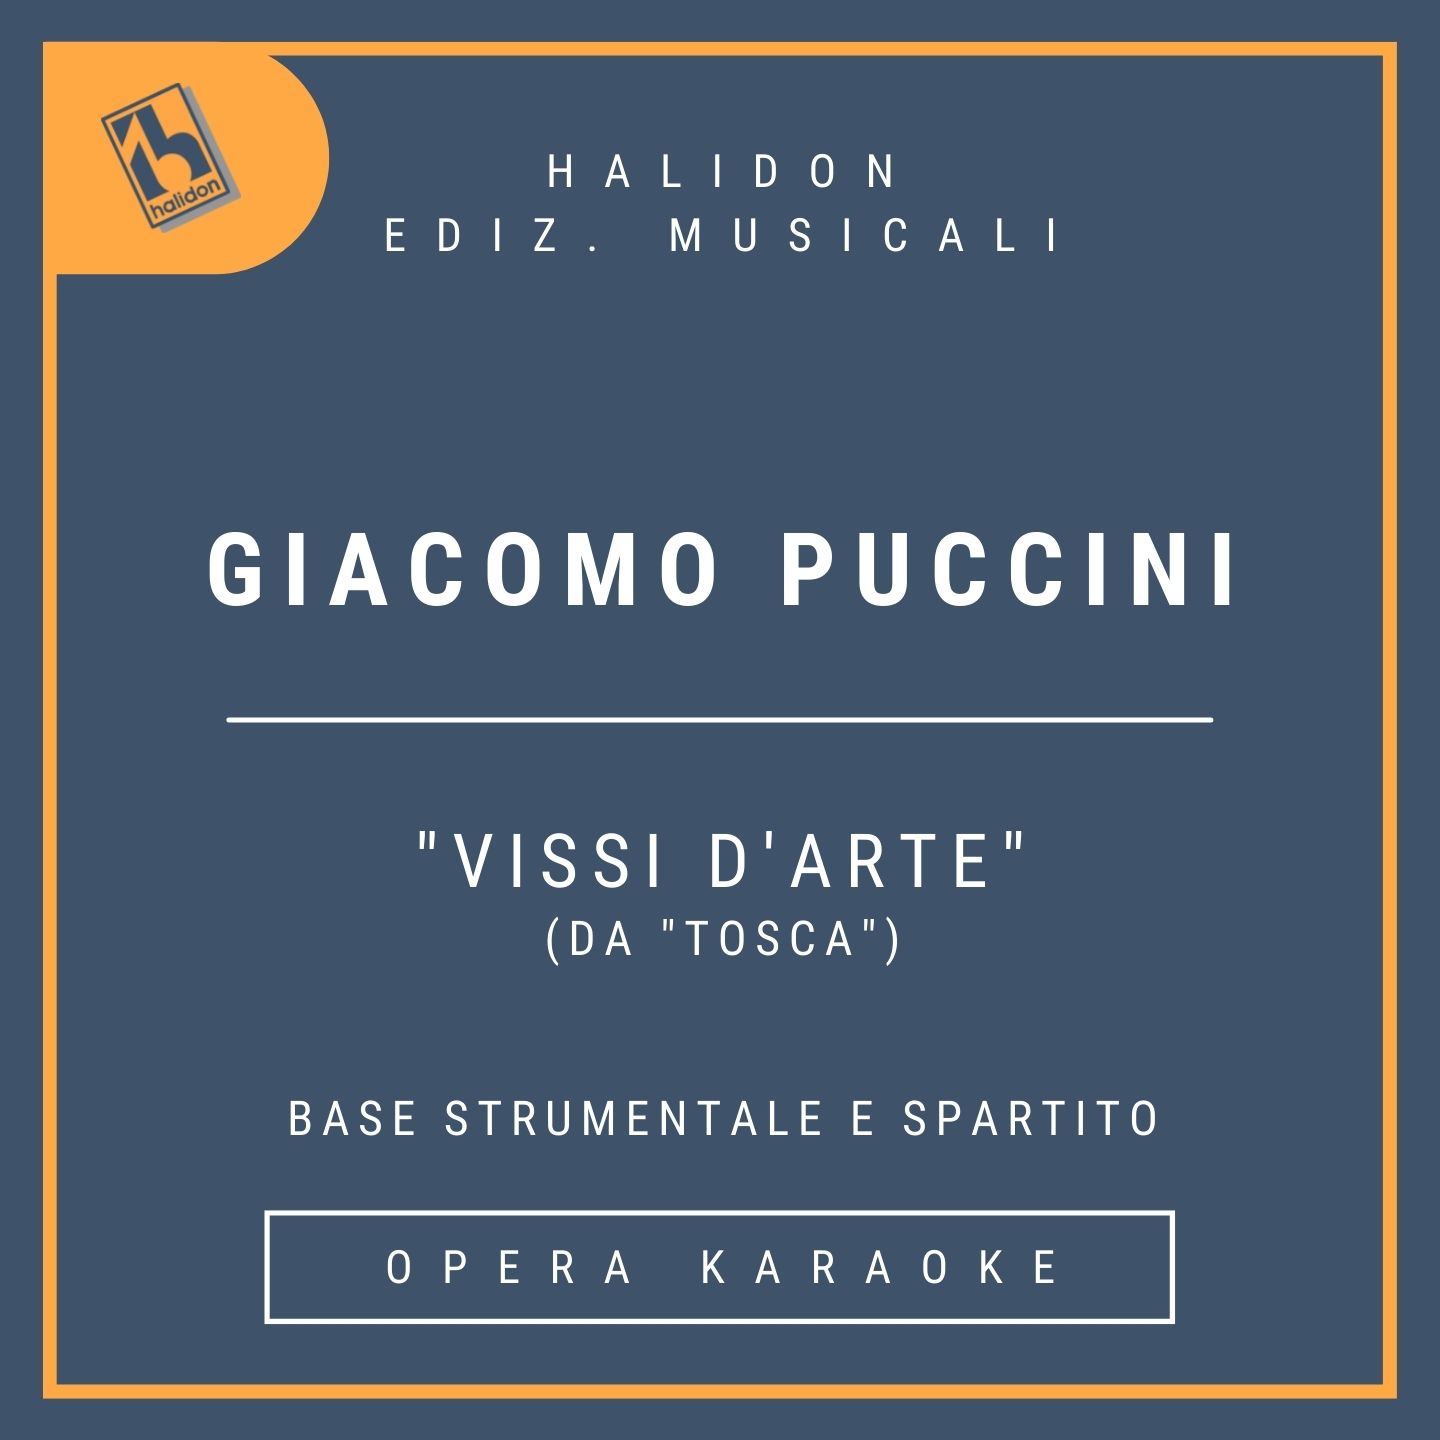 Giacomo Puccini - Vissi d'arte (da 'Tosca') - Aria di Tosca (soprano drammatico) - Base strumentale + spartito